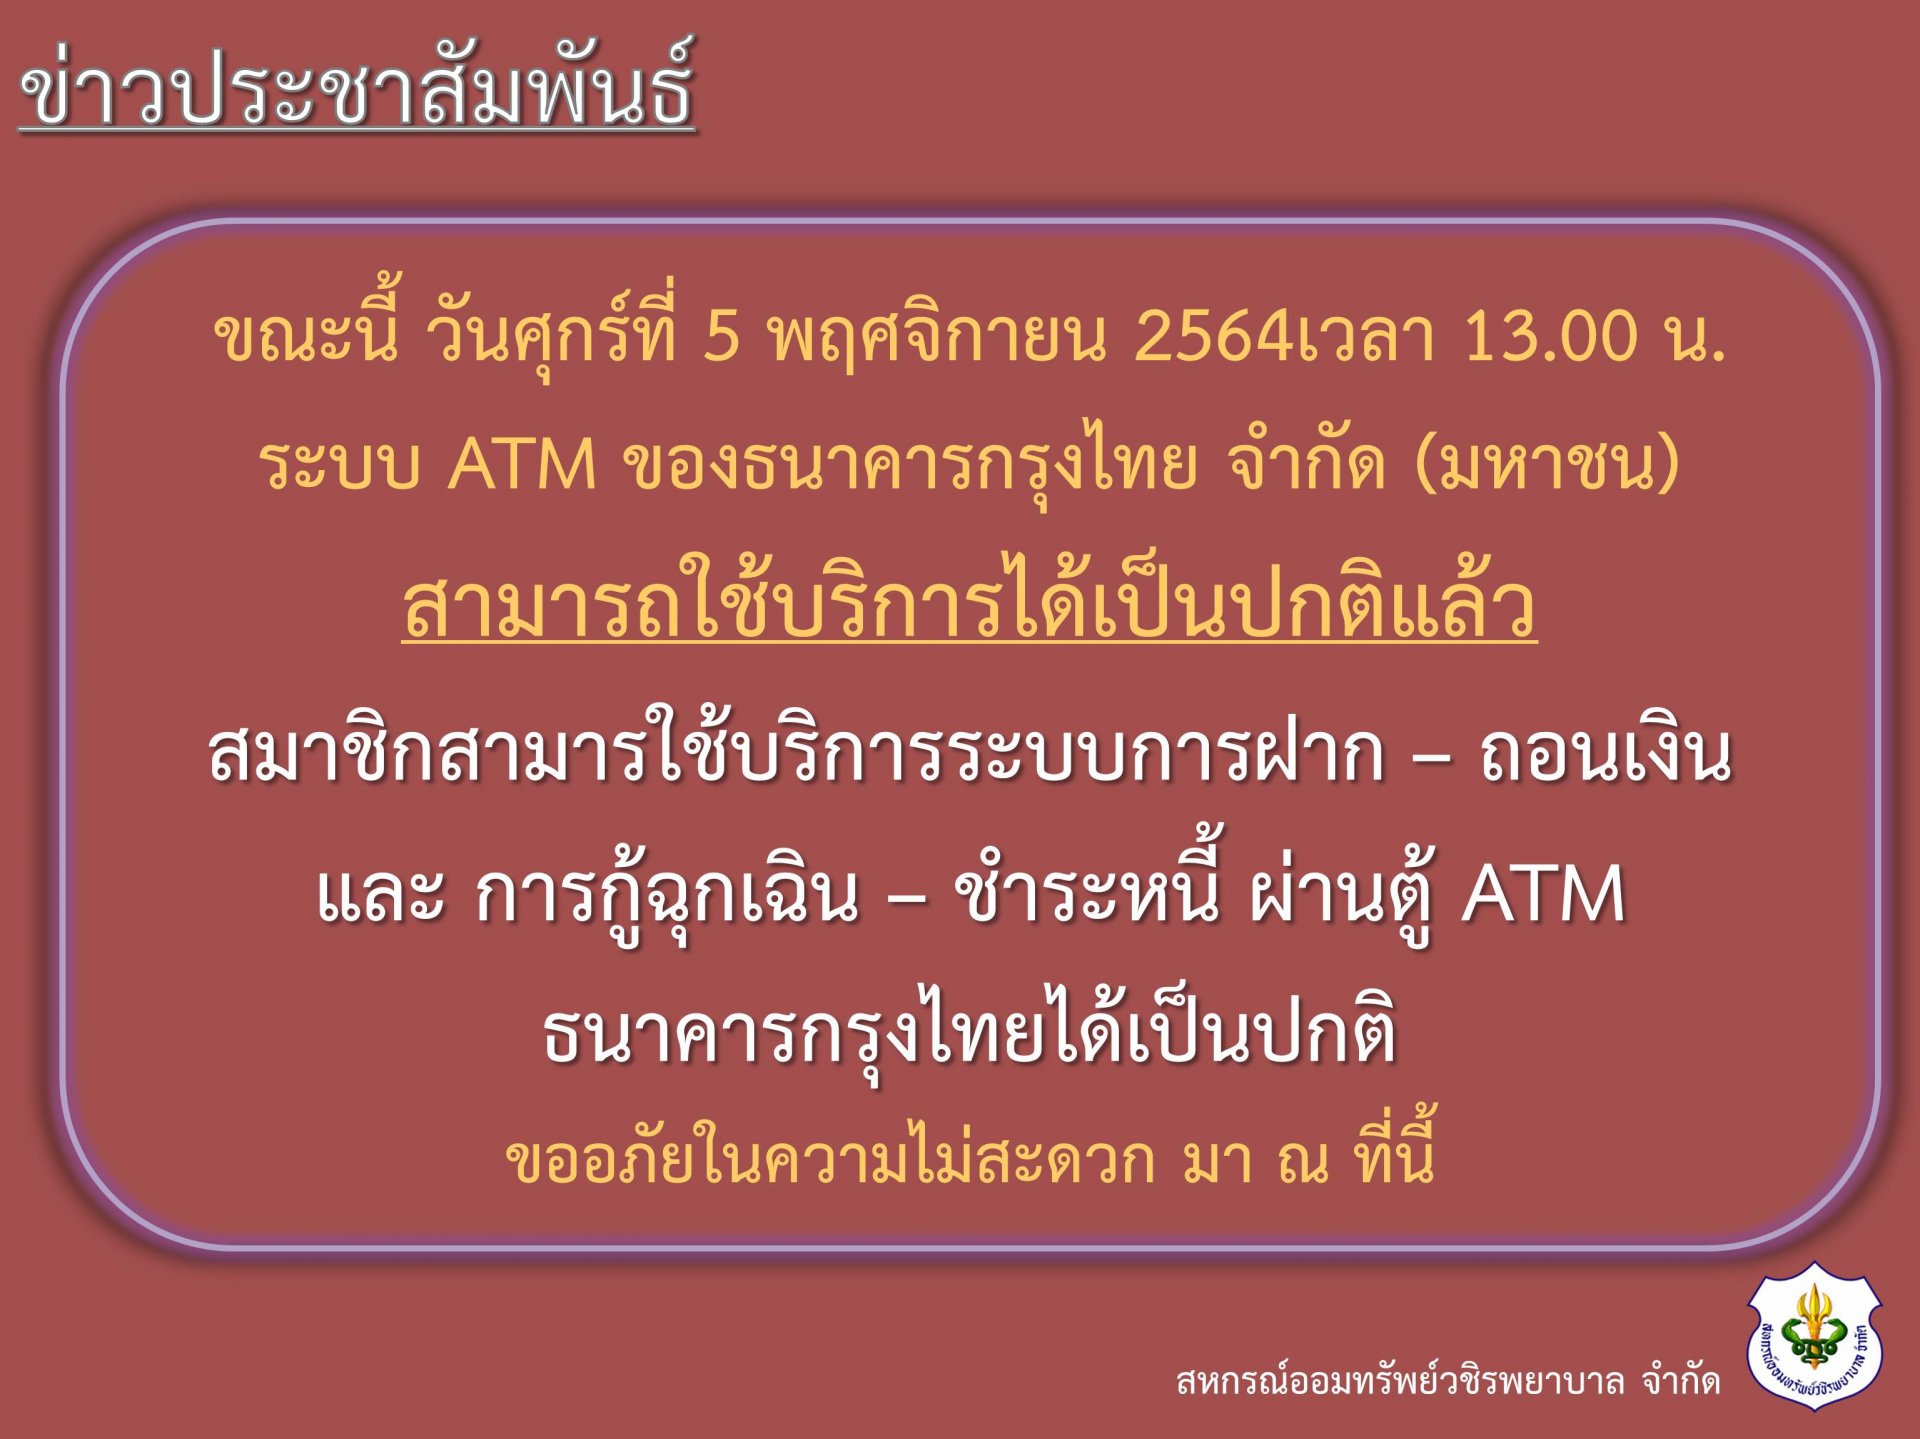 แจ้ง ATM สามารถใช้งานได้